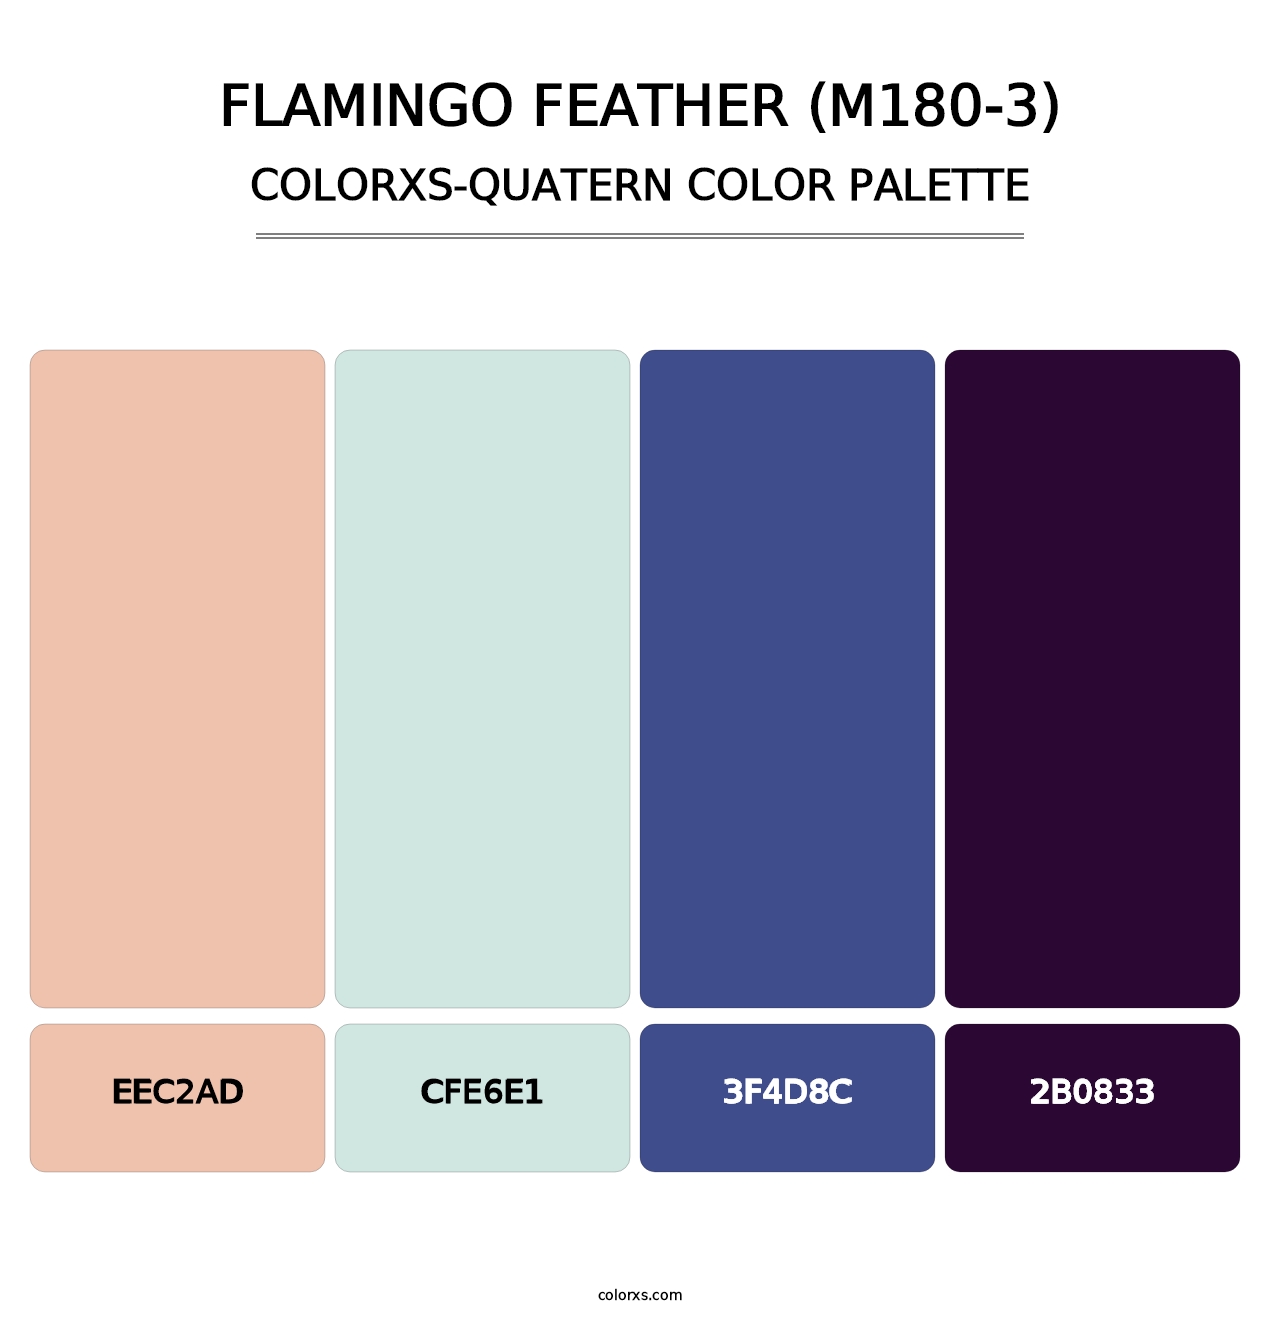 Flamingo Feather (M180-3) - Colorxs Quatern Palette